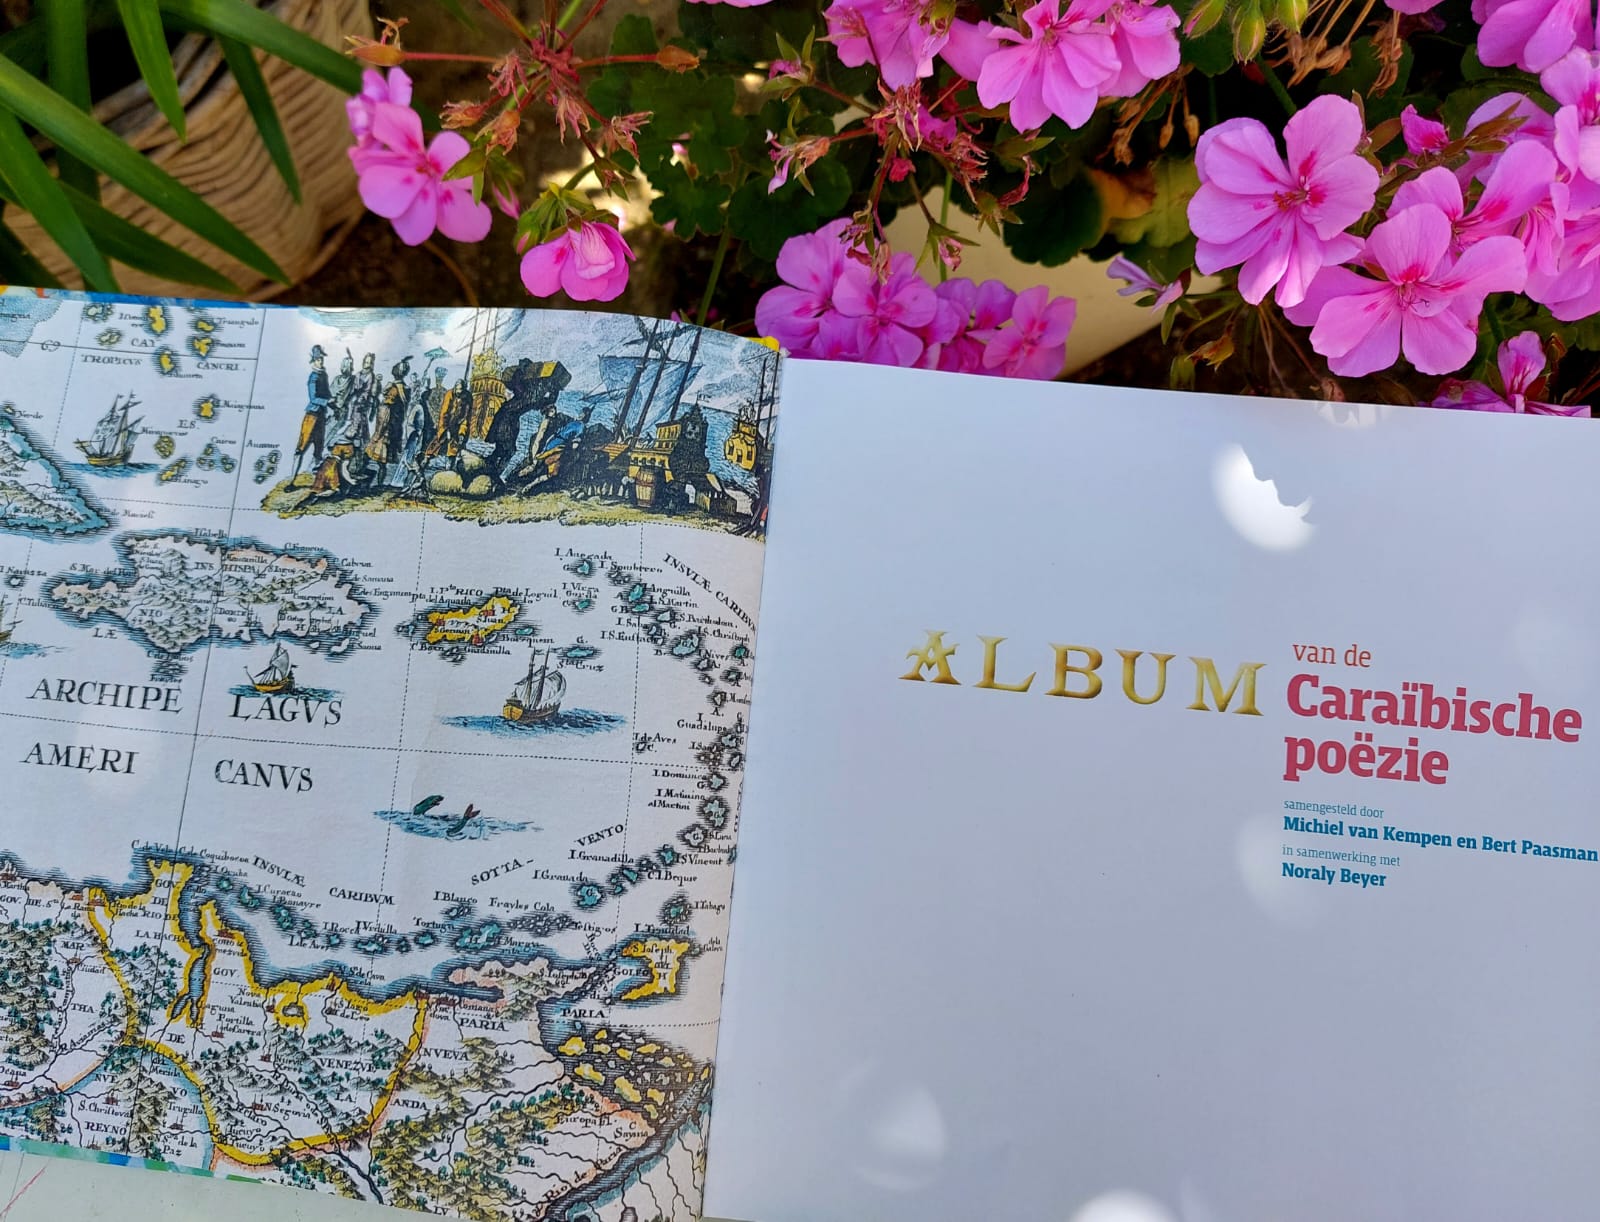 Album van de Caraïbische poëzie